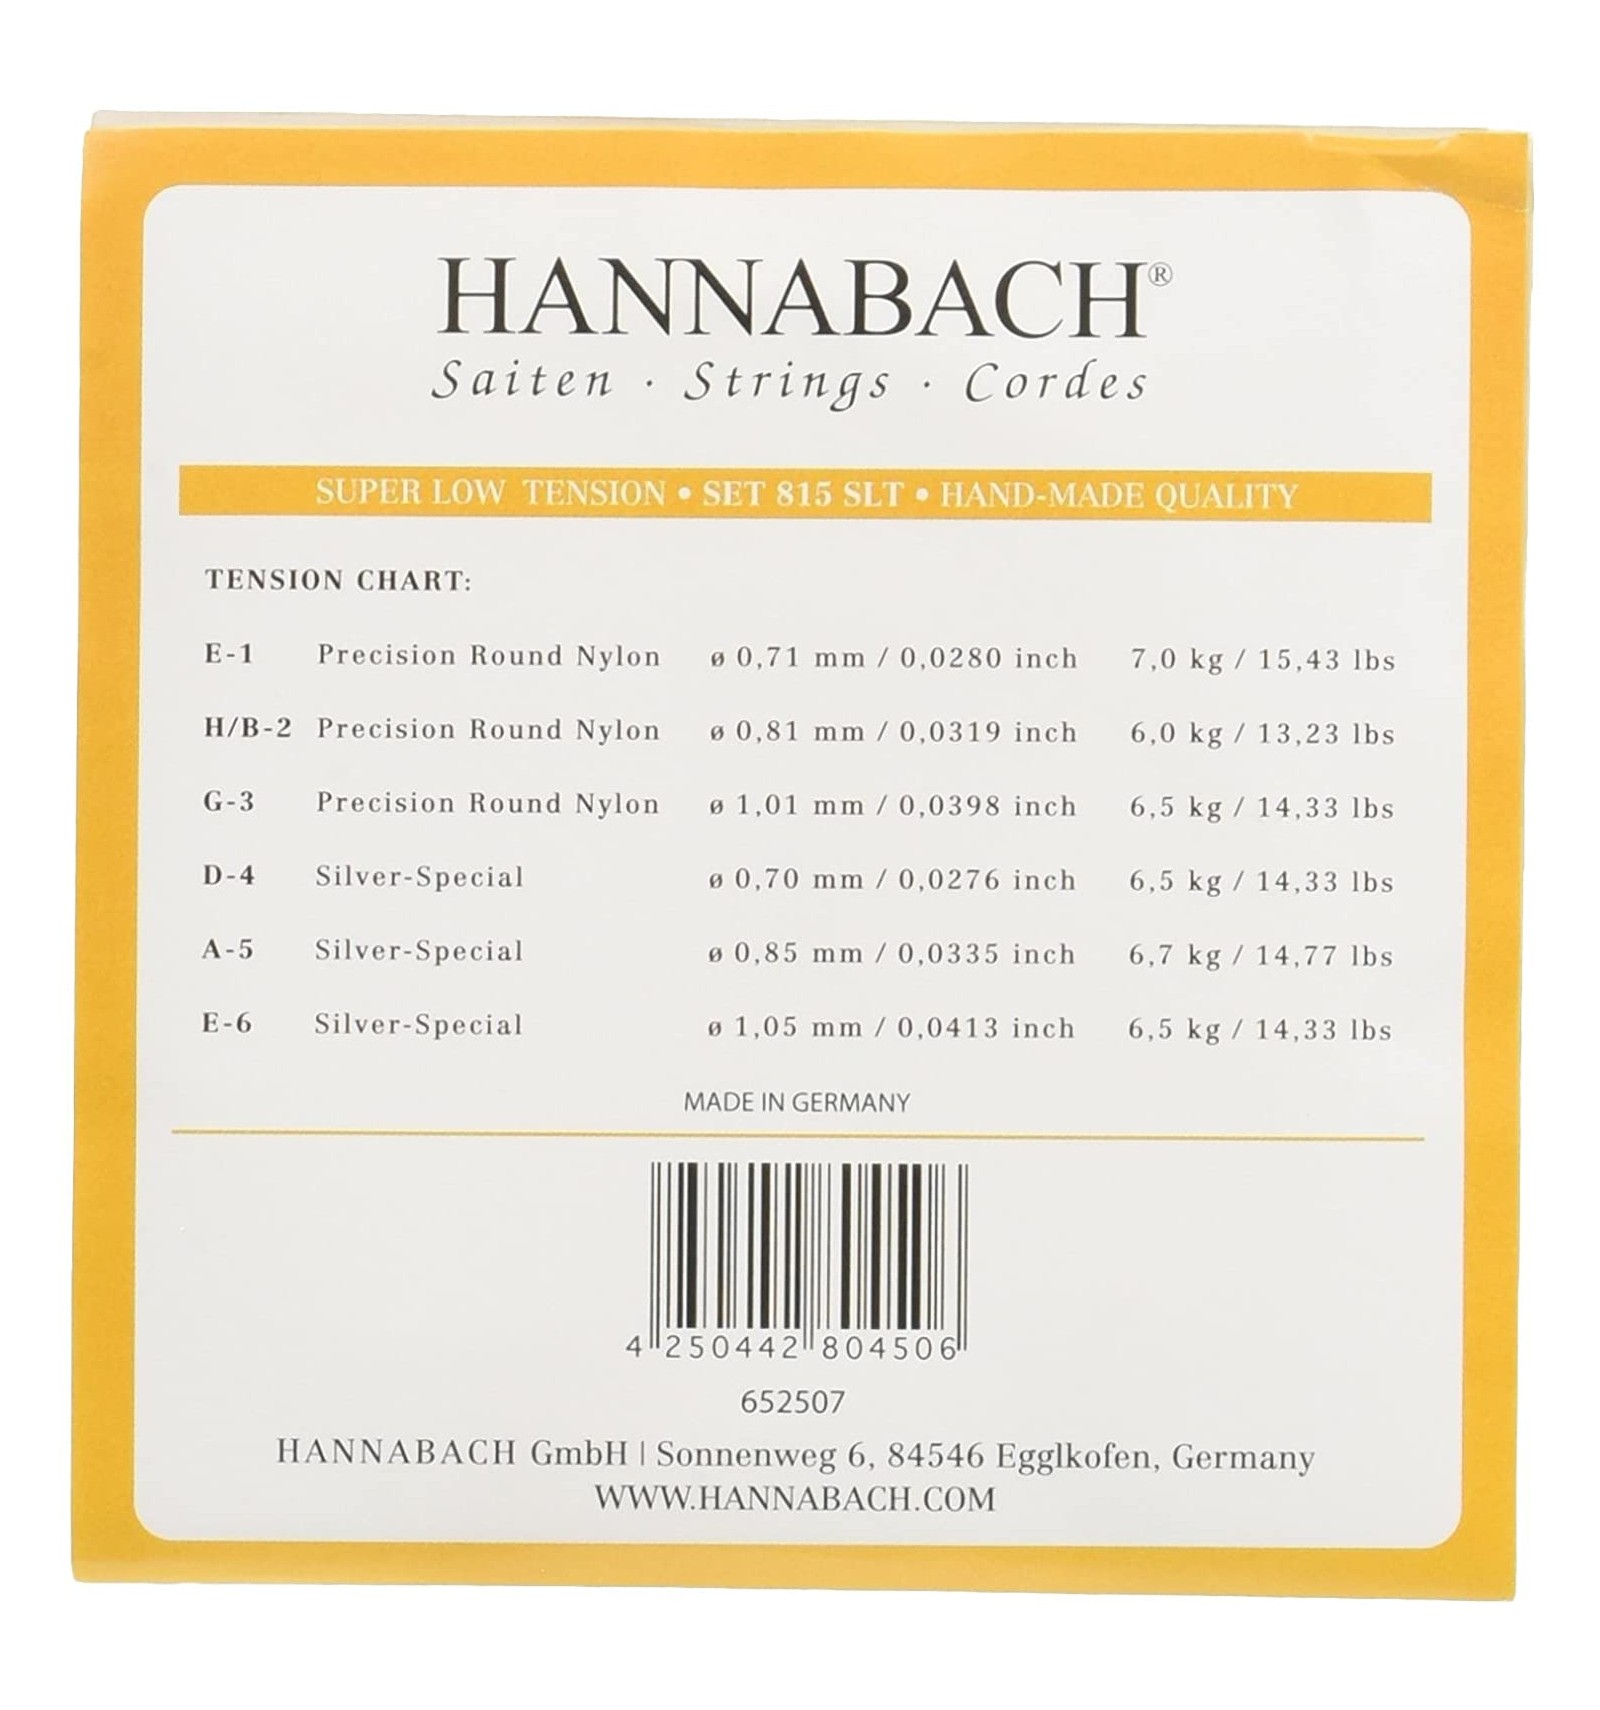 Струны для классической гитары Hannabach 815SLT Yellow SILVER SPECIAL